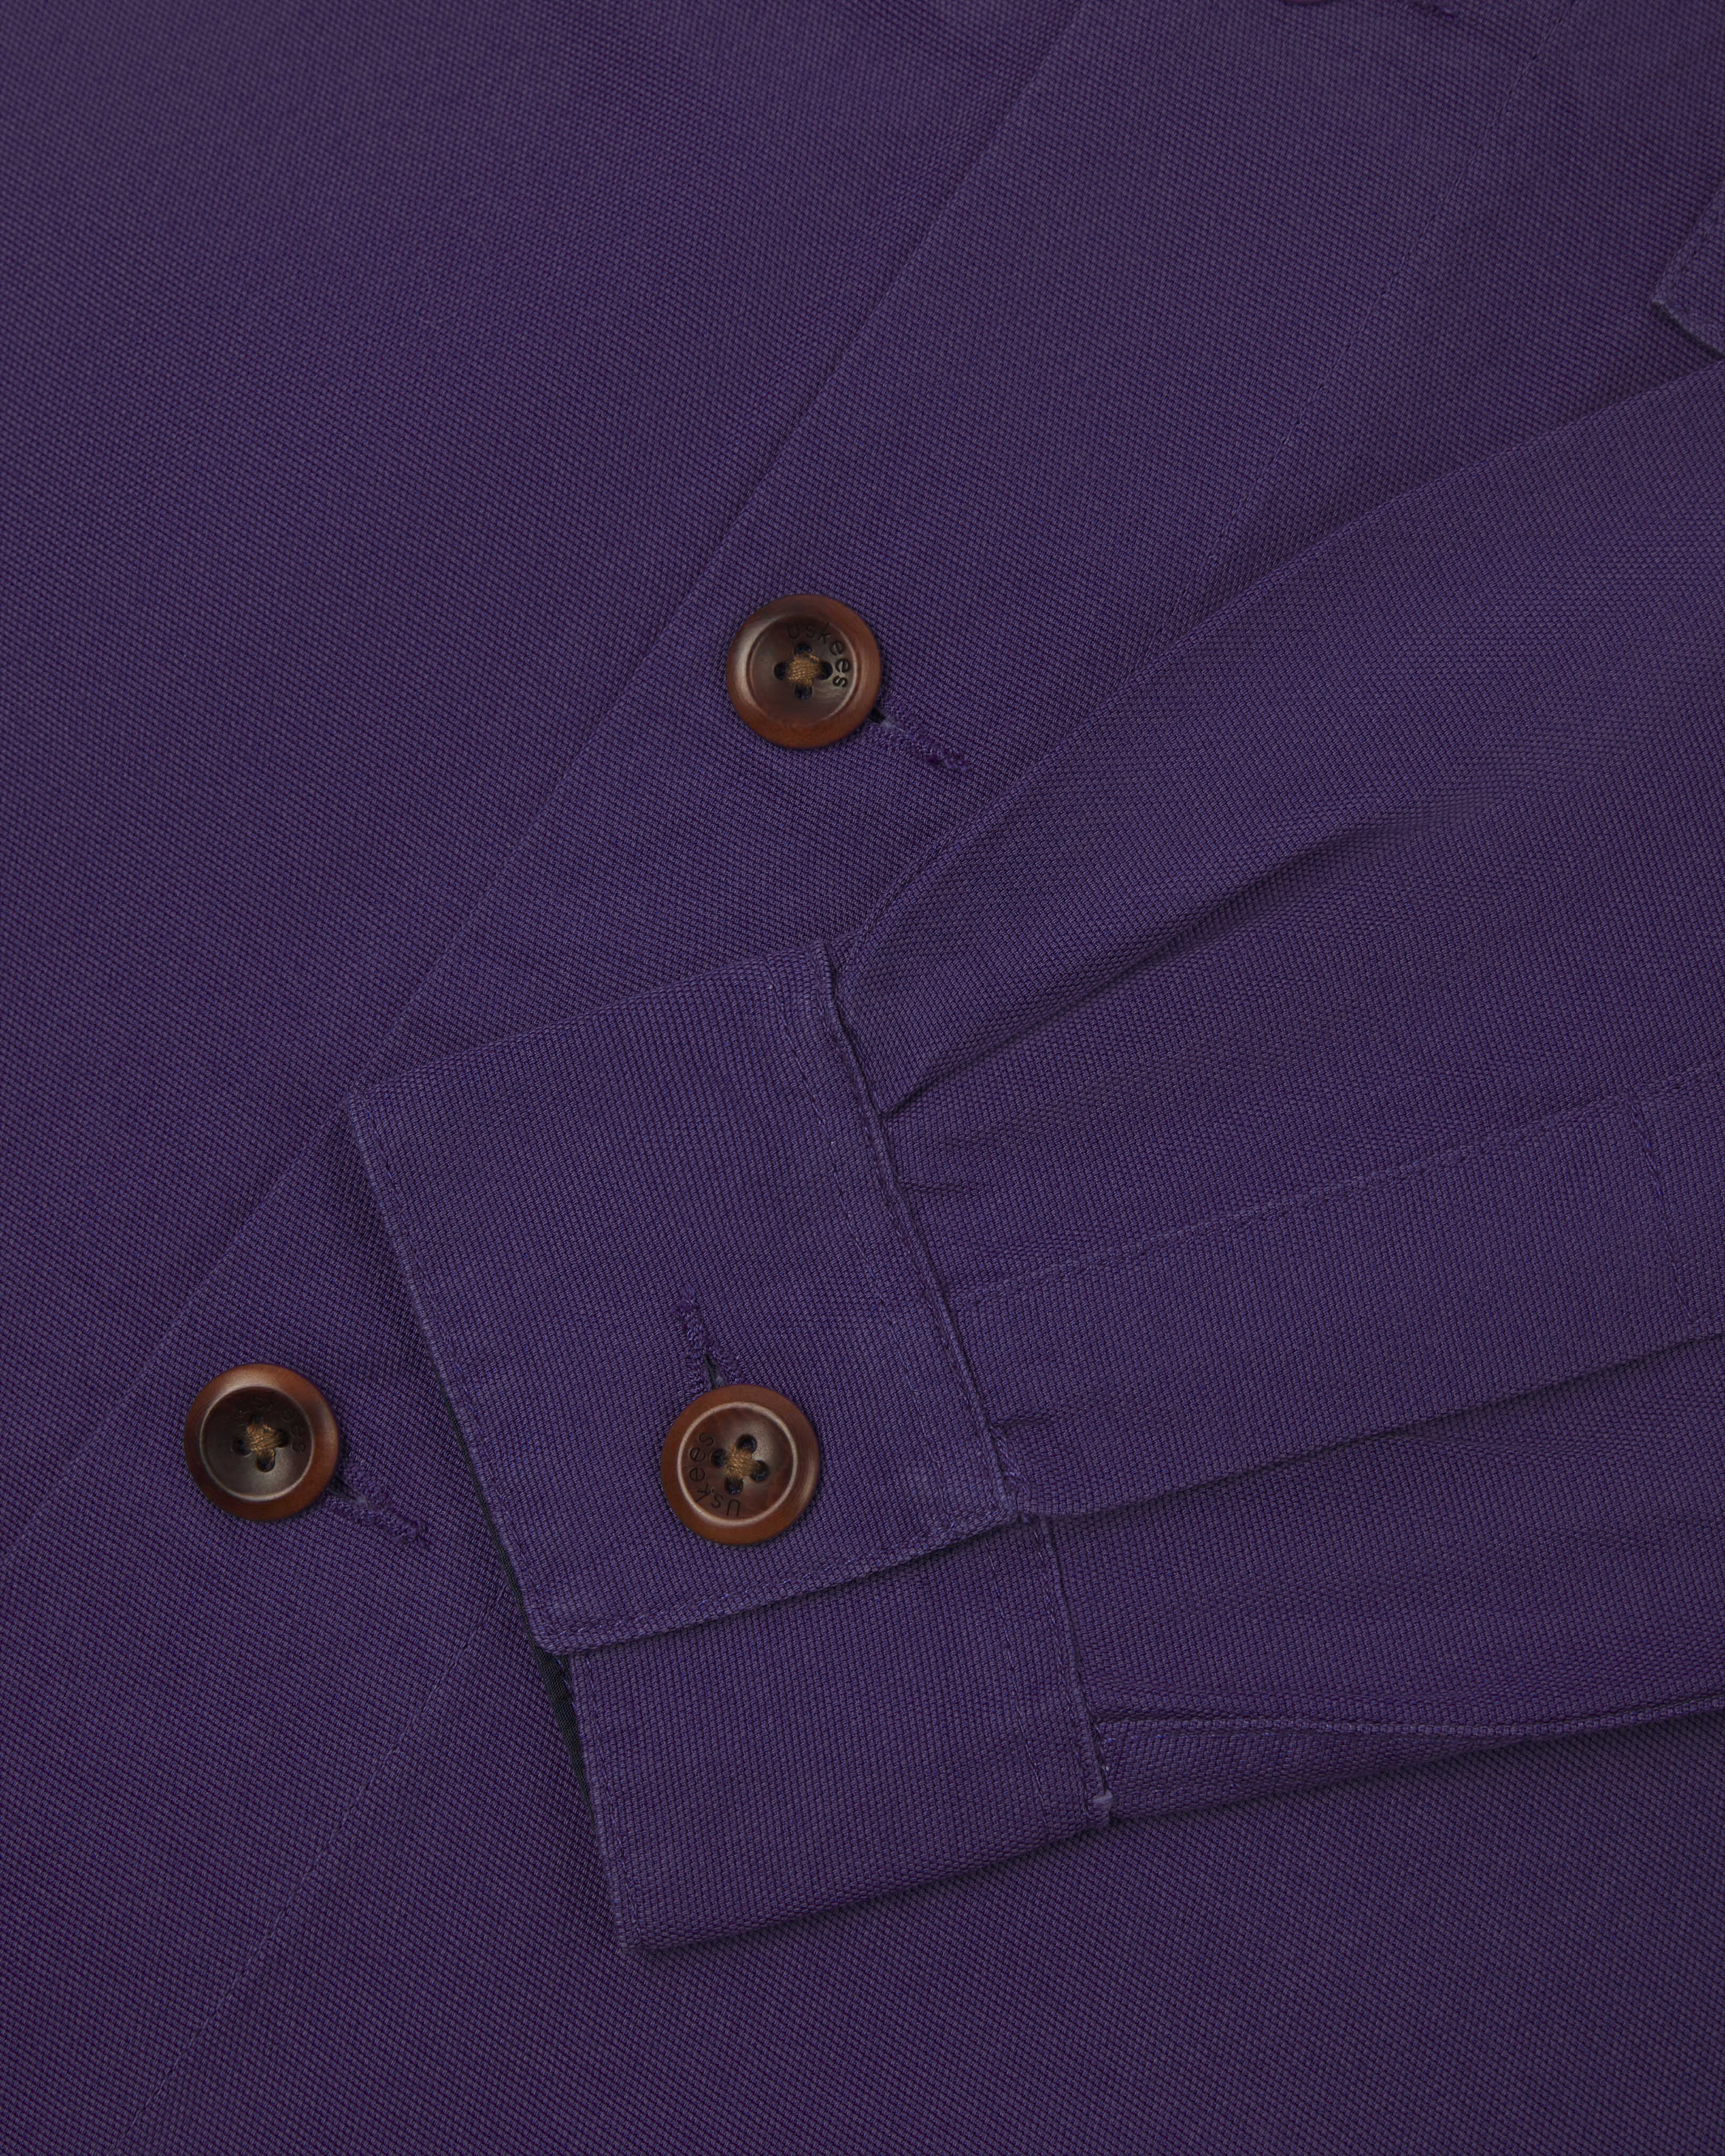 zero waste - #3003 buttoned workshirt - purple